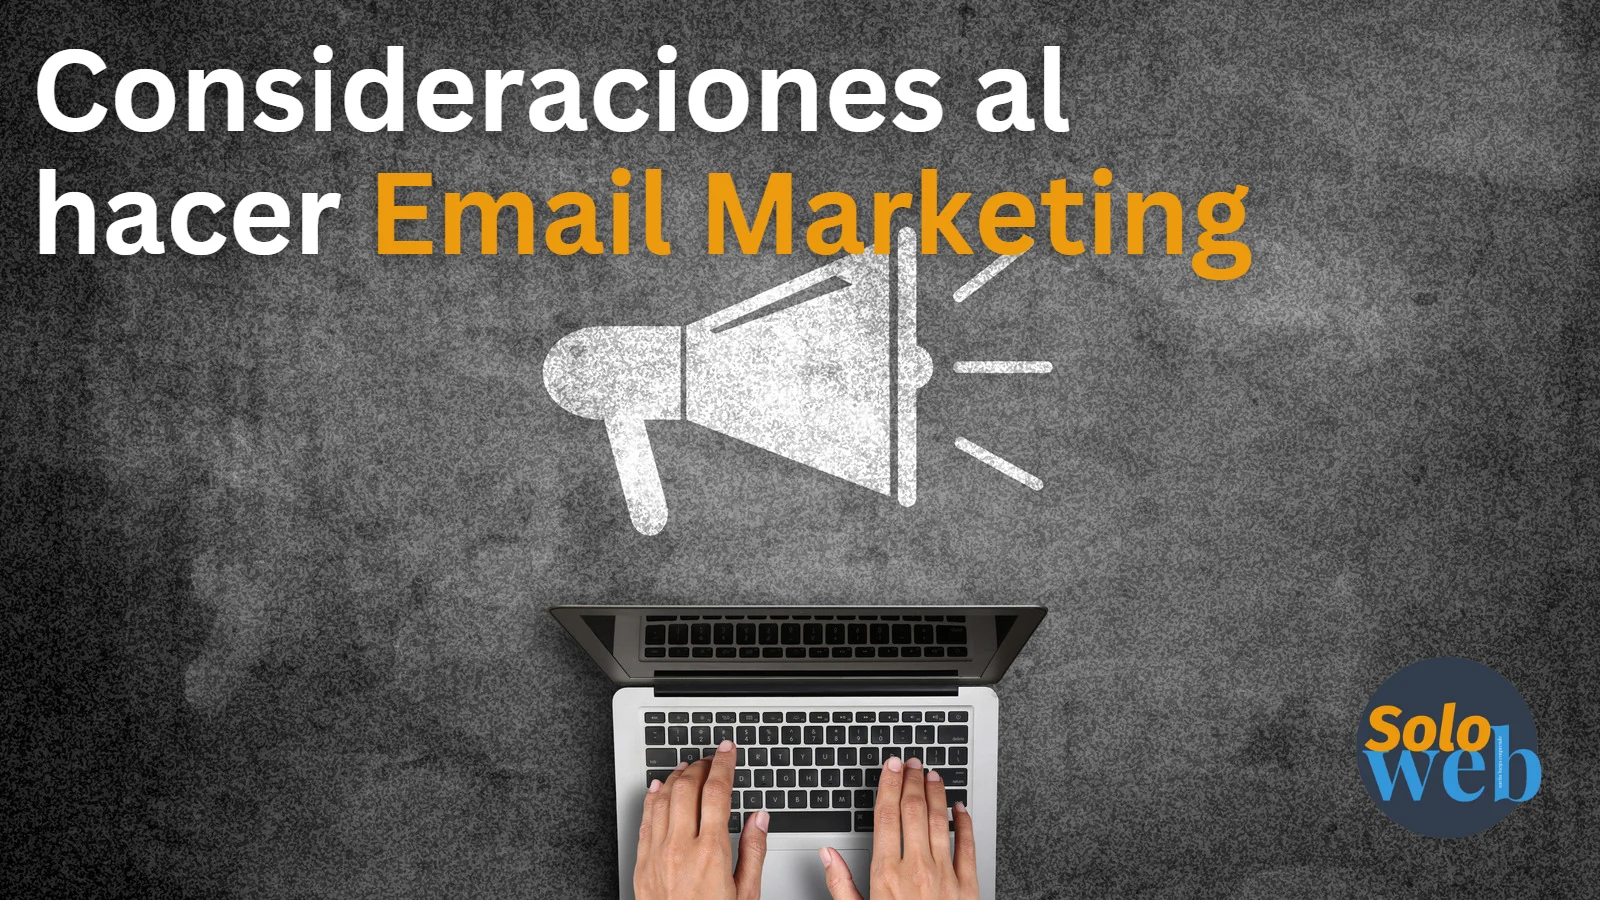 Email marketing como campaña y sus elementos importantes a considerar